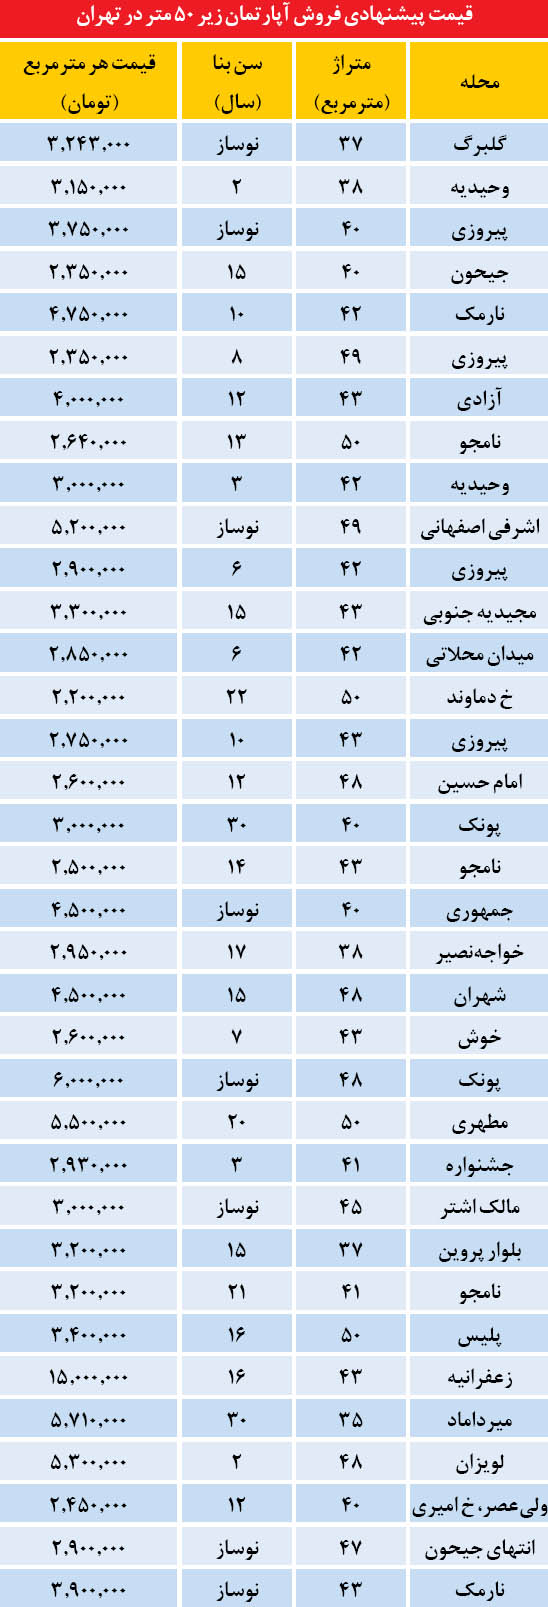 قیمت آپاتمان های زیر 50 متر در تهران /جدول